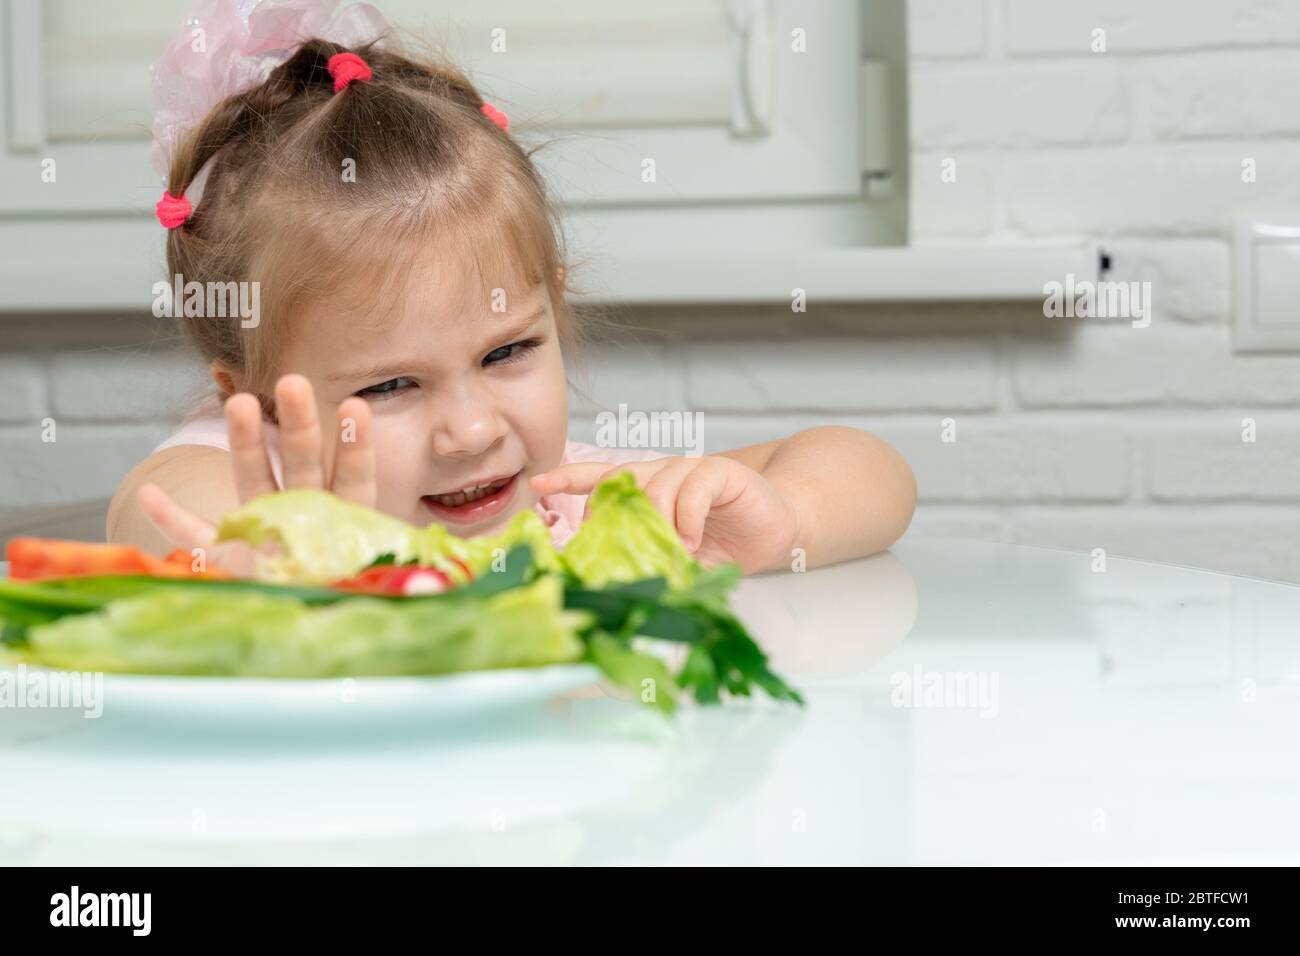 una bambina spinge emozionalmente via un piatto di verdure offerte. i bambini rifiutano le verdure a favore di cibo spazzatura Foto Stock